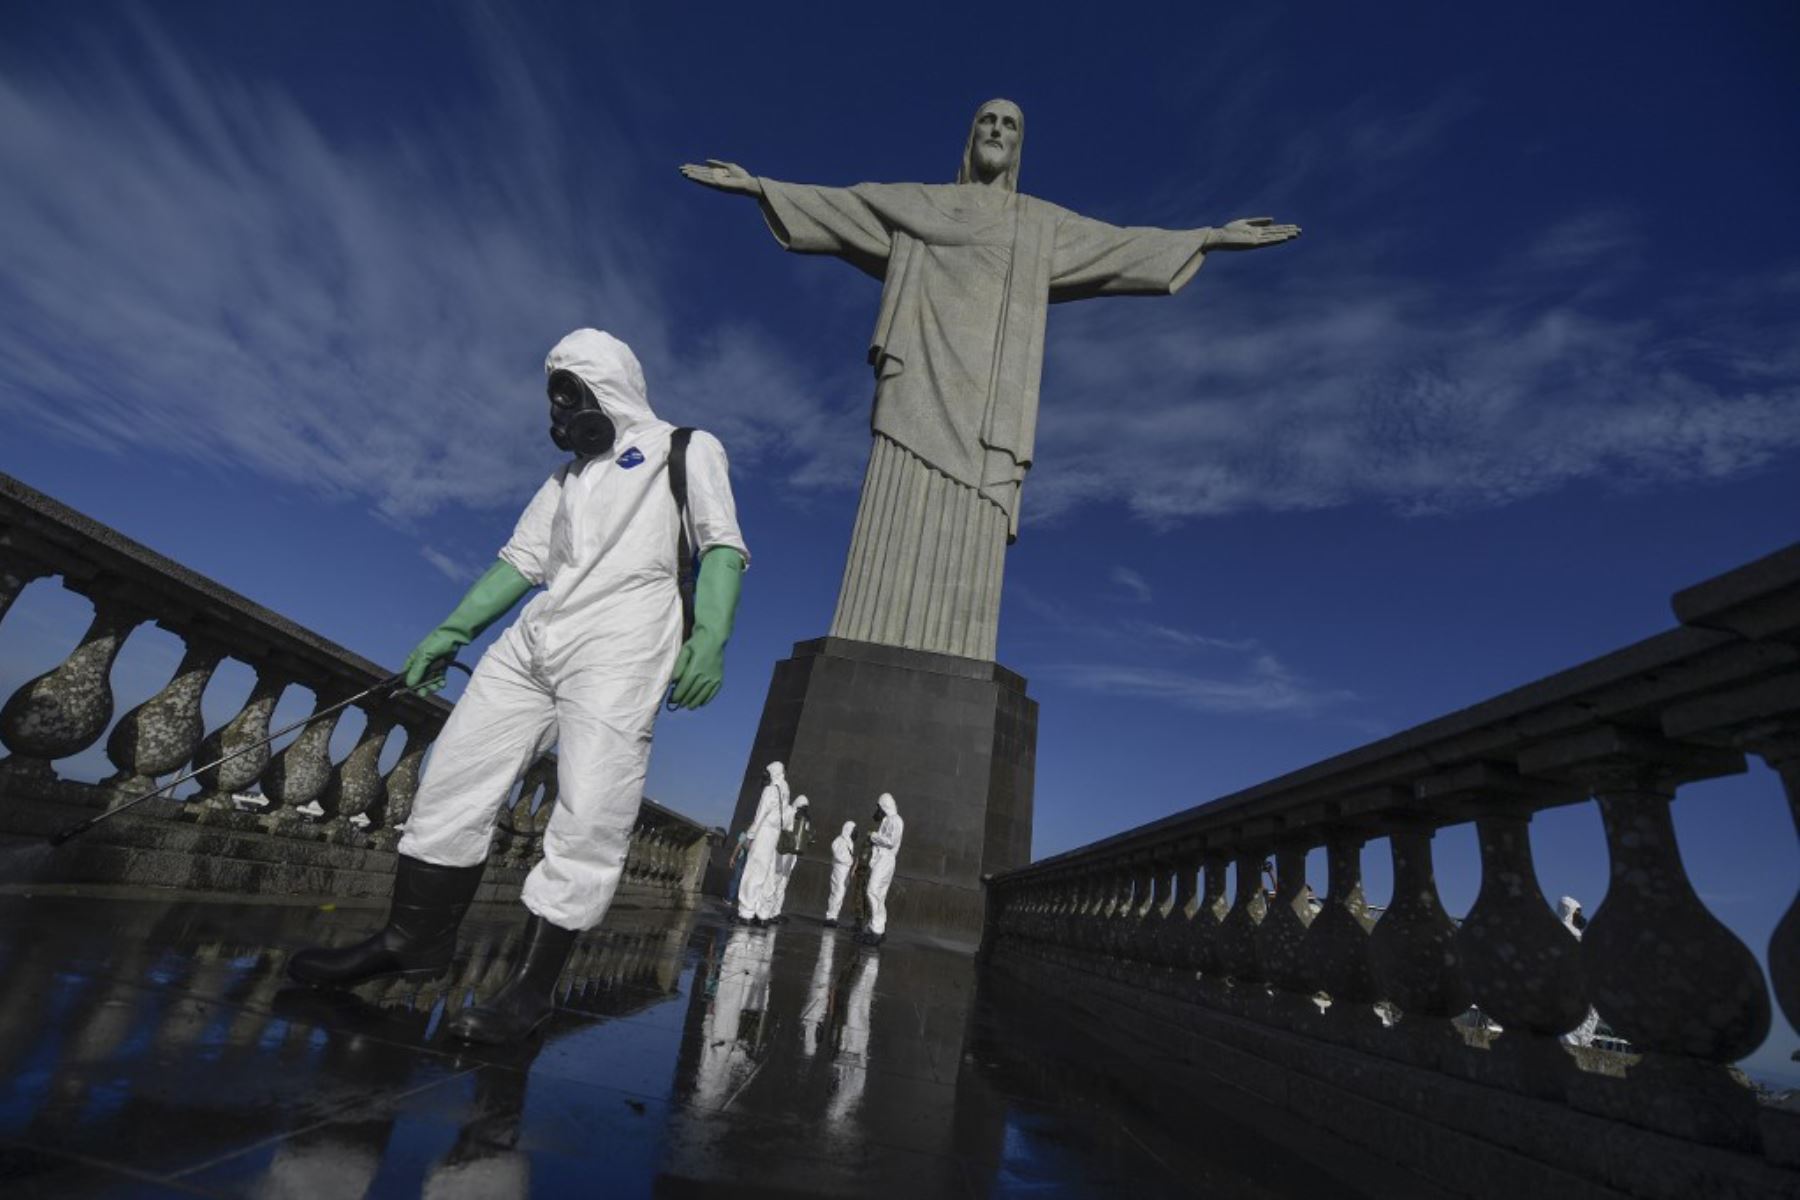 Soldados de las Fuerzas Armadas de Brasil son vistos durante los procedimientos de desinfección de la estatua del Cristo Redentor en la montaña Corcovado, en Río de Janeiro, Brasil.

Foto: AFP